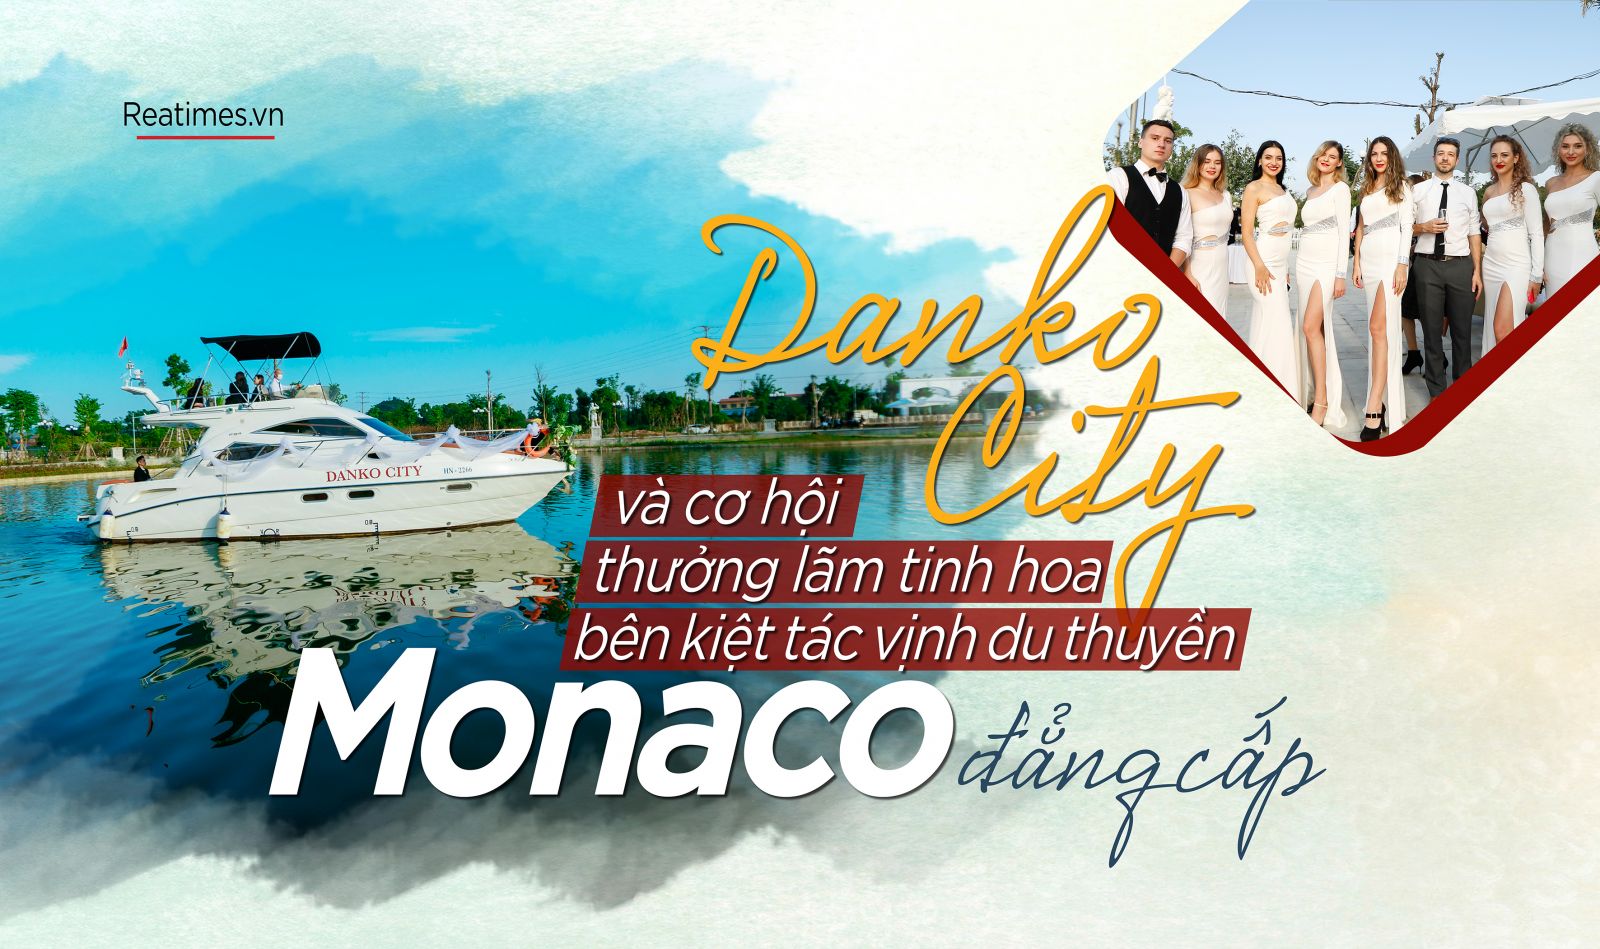 Danko City và cơ hội thưởng lãm tinh hoa bên kiệt tác vịnh du thuyền Monaco đẳng cấp